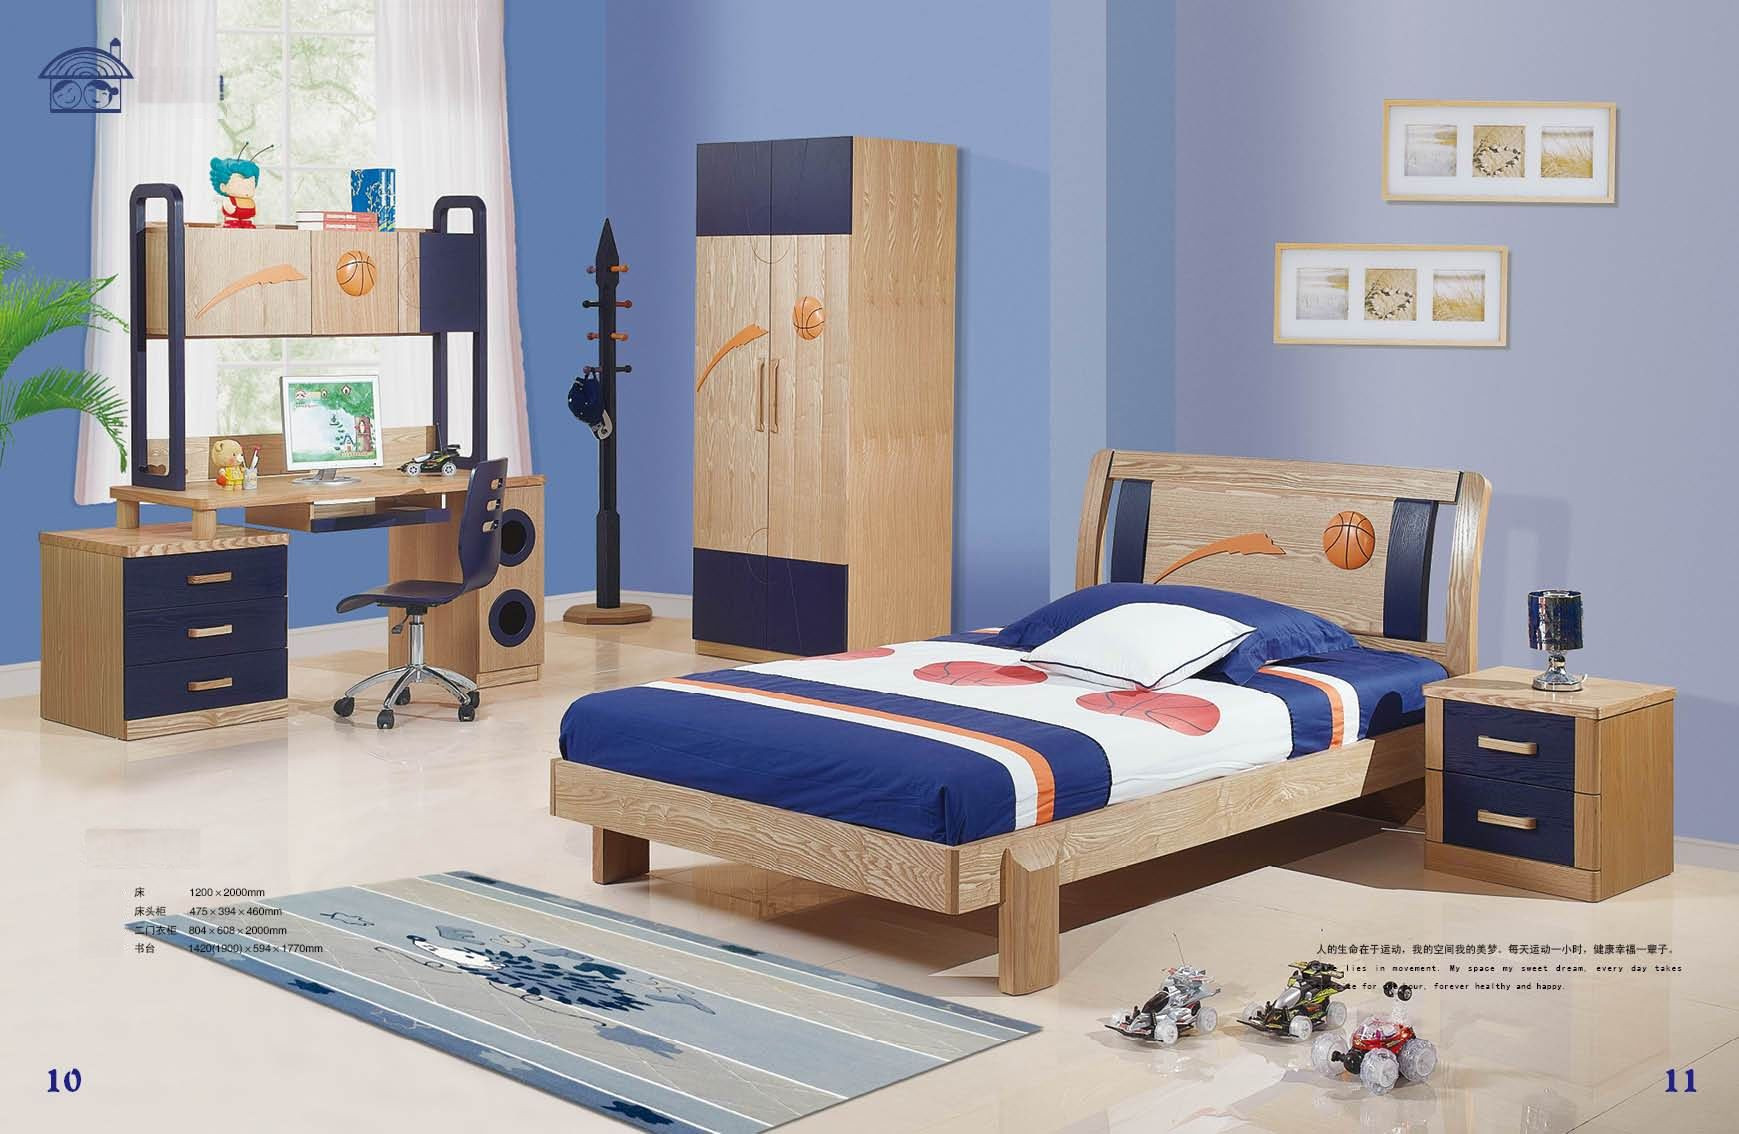 Toddler Bedroom Set For Boys
 Youth Bedroom Furniture